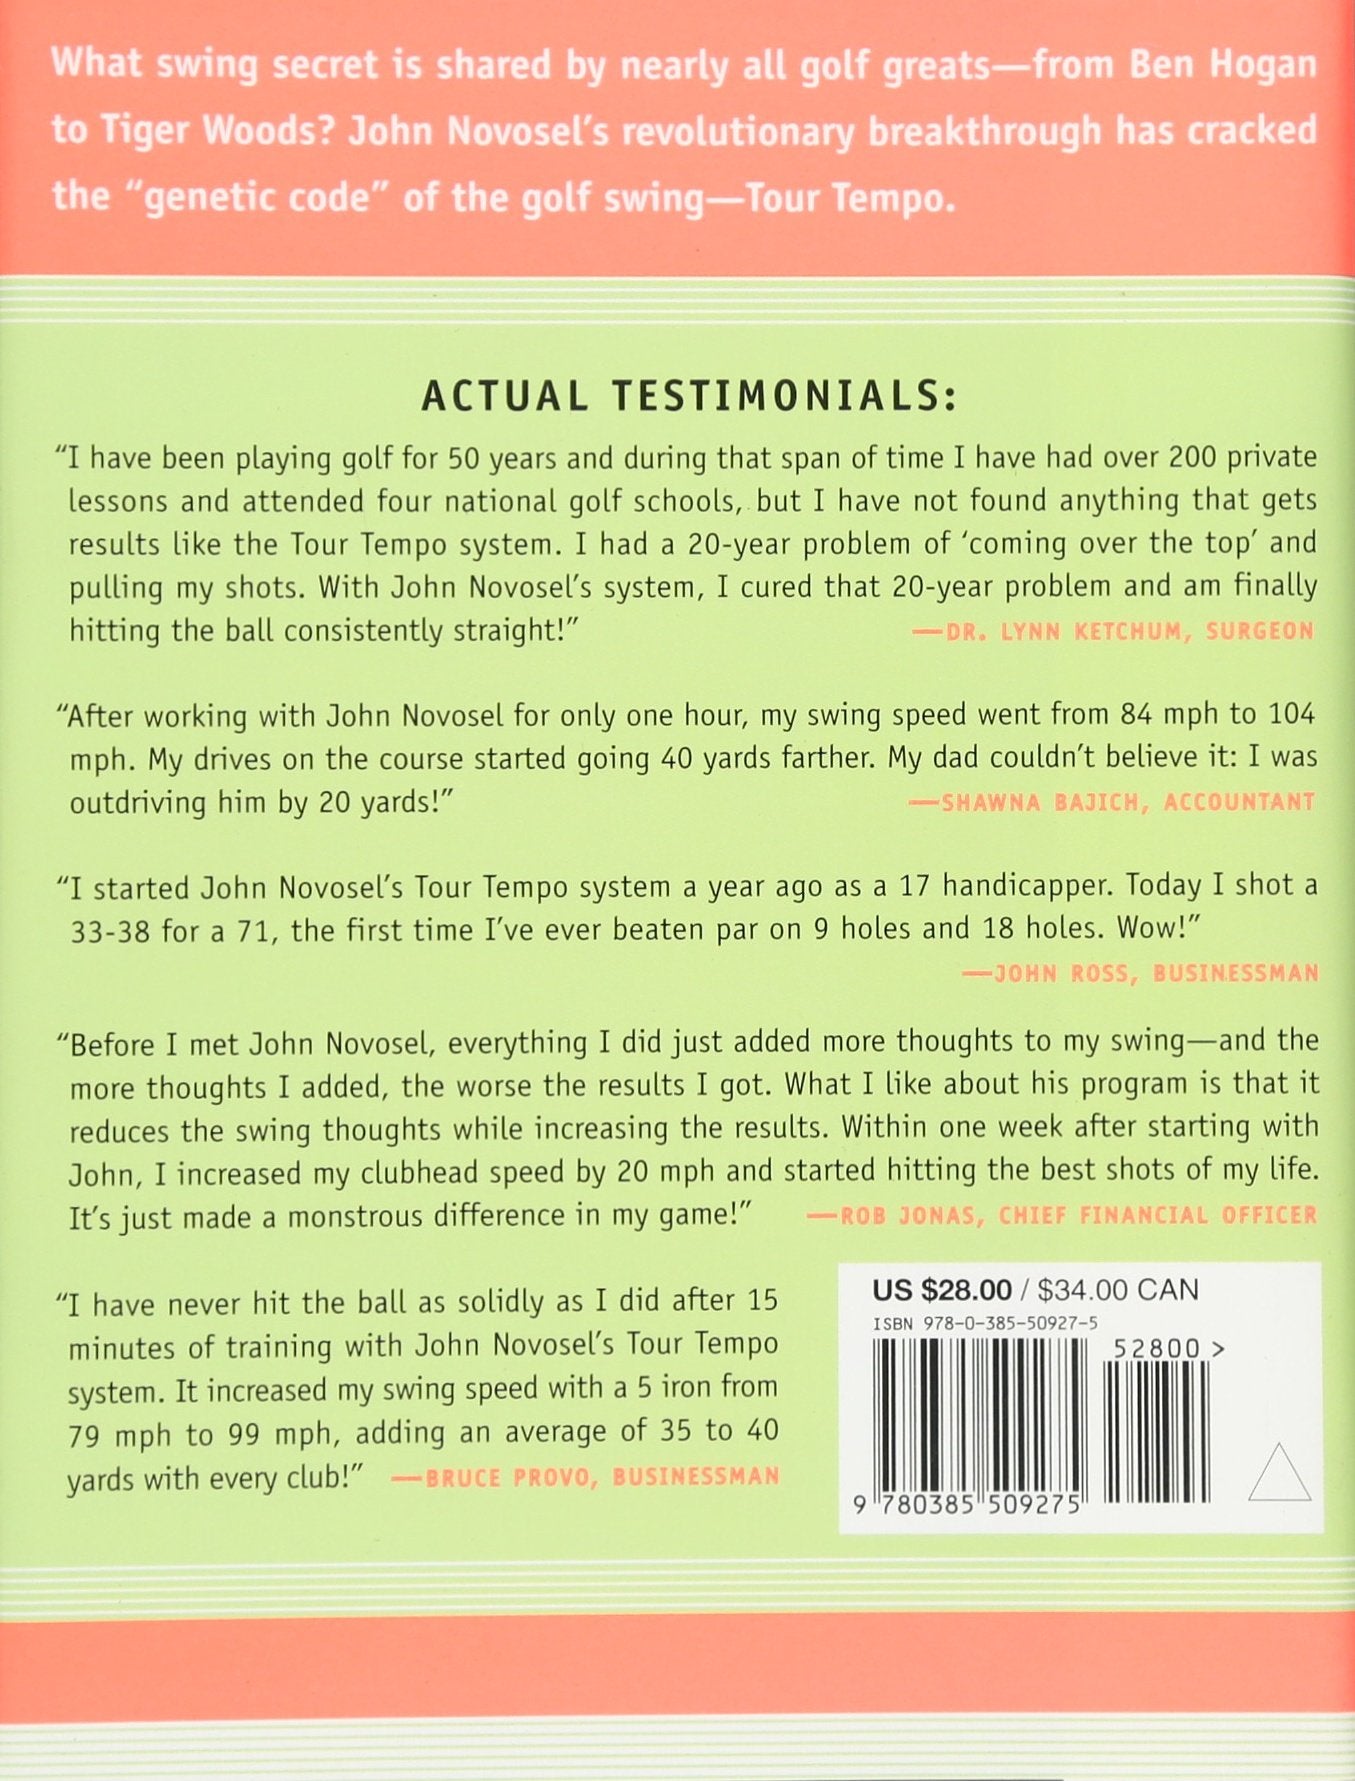 Le petit Larousse du golf : le livre de référence pour apprendre à jouer  comme un pro - Steve Newell - Librairie Mollat Bordeaux